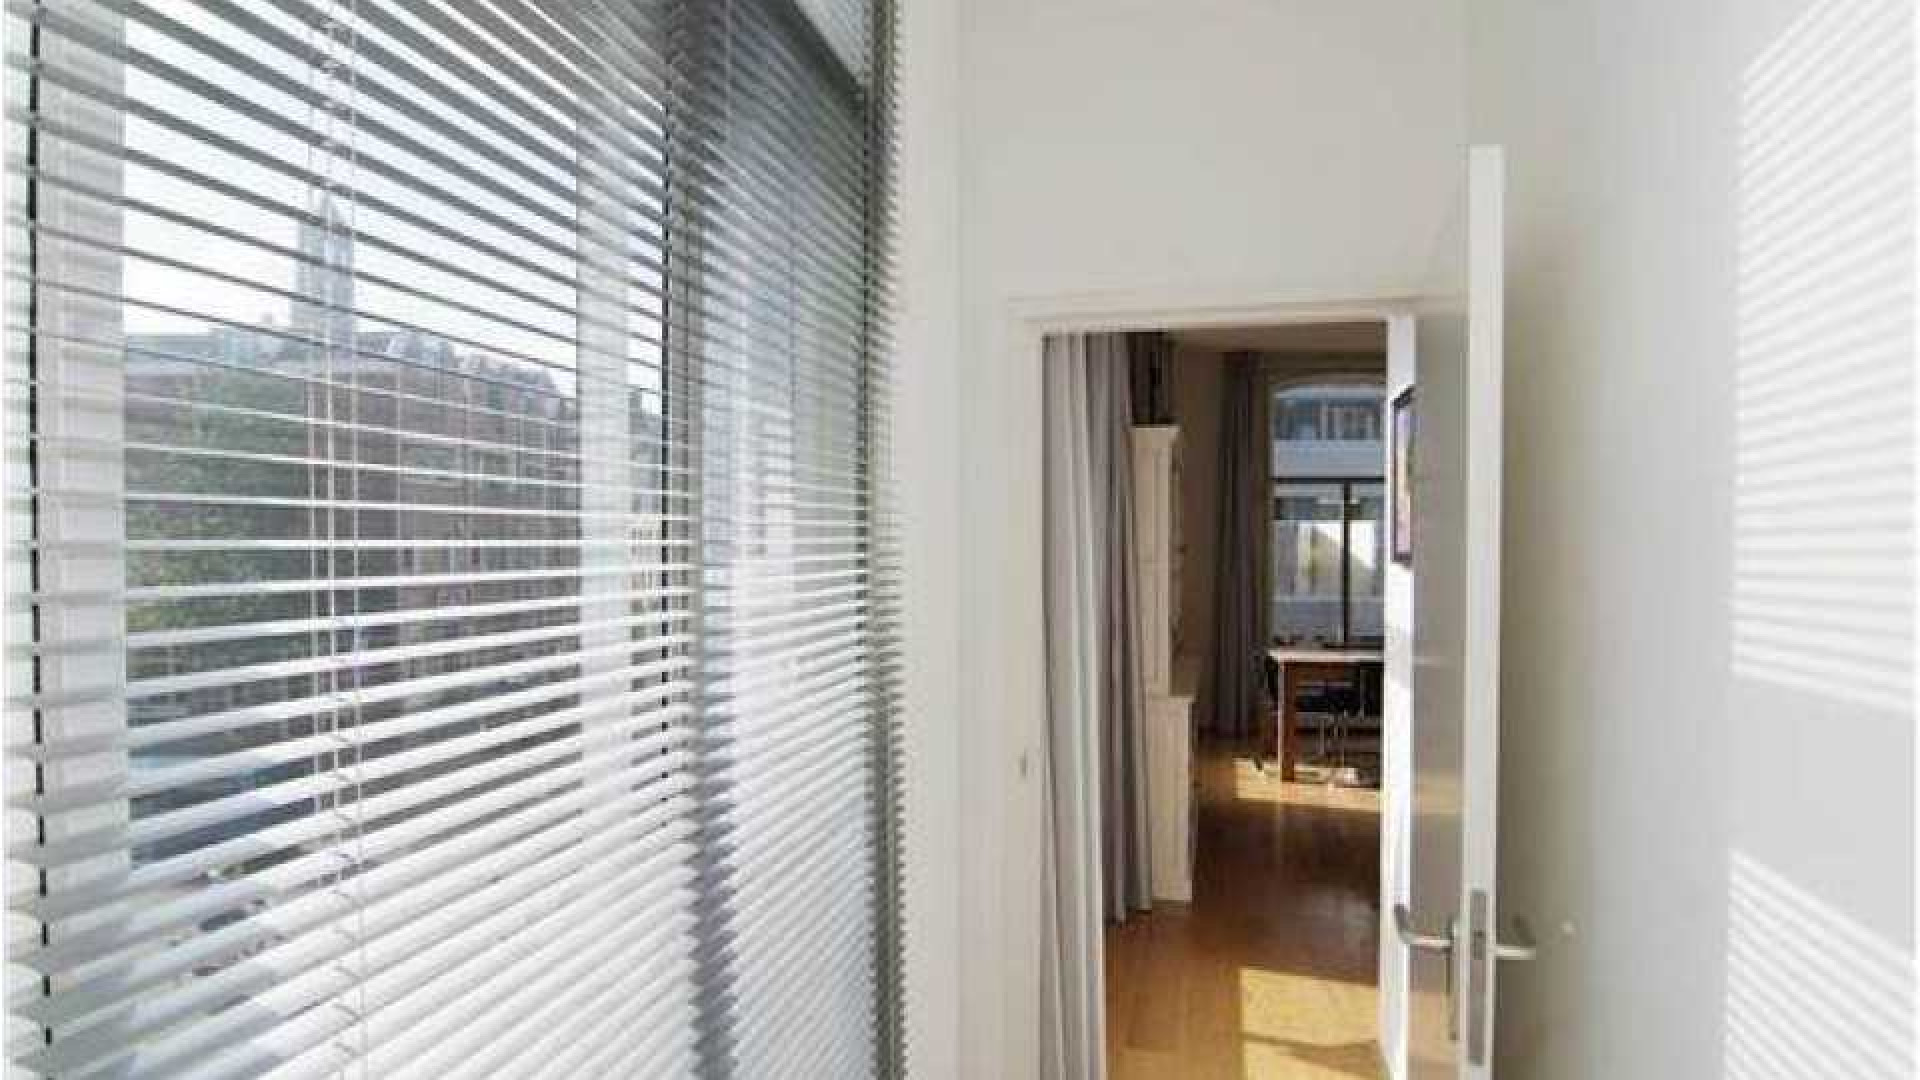 Charles Groenhuijsen huurt leuk appartement in centrum van Utrecht. Zie foto's 11